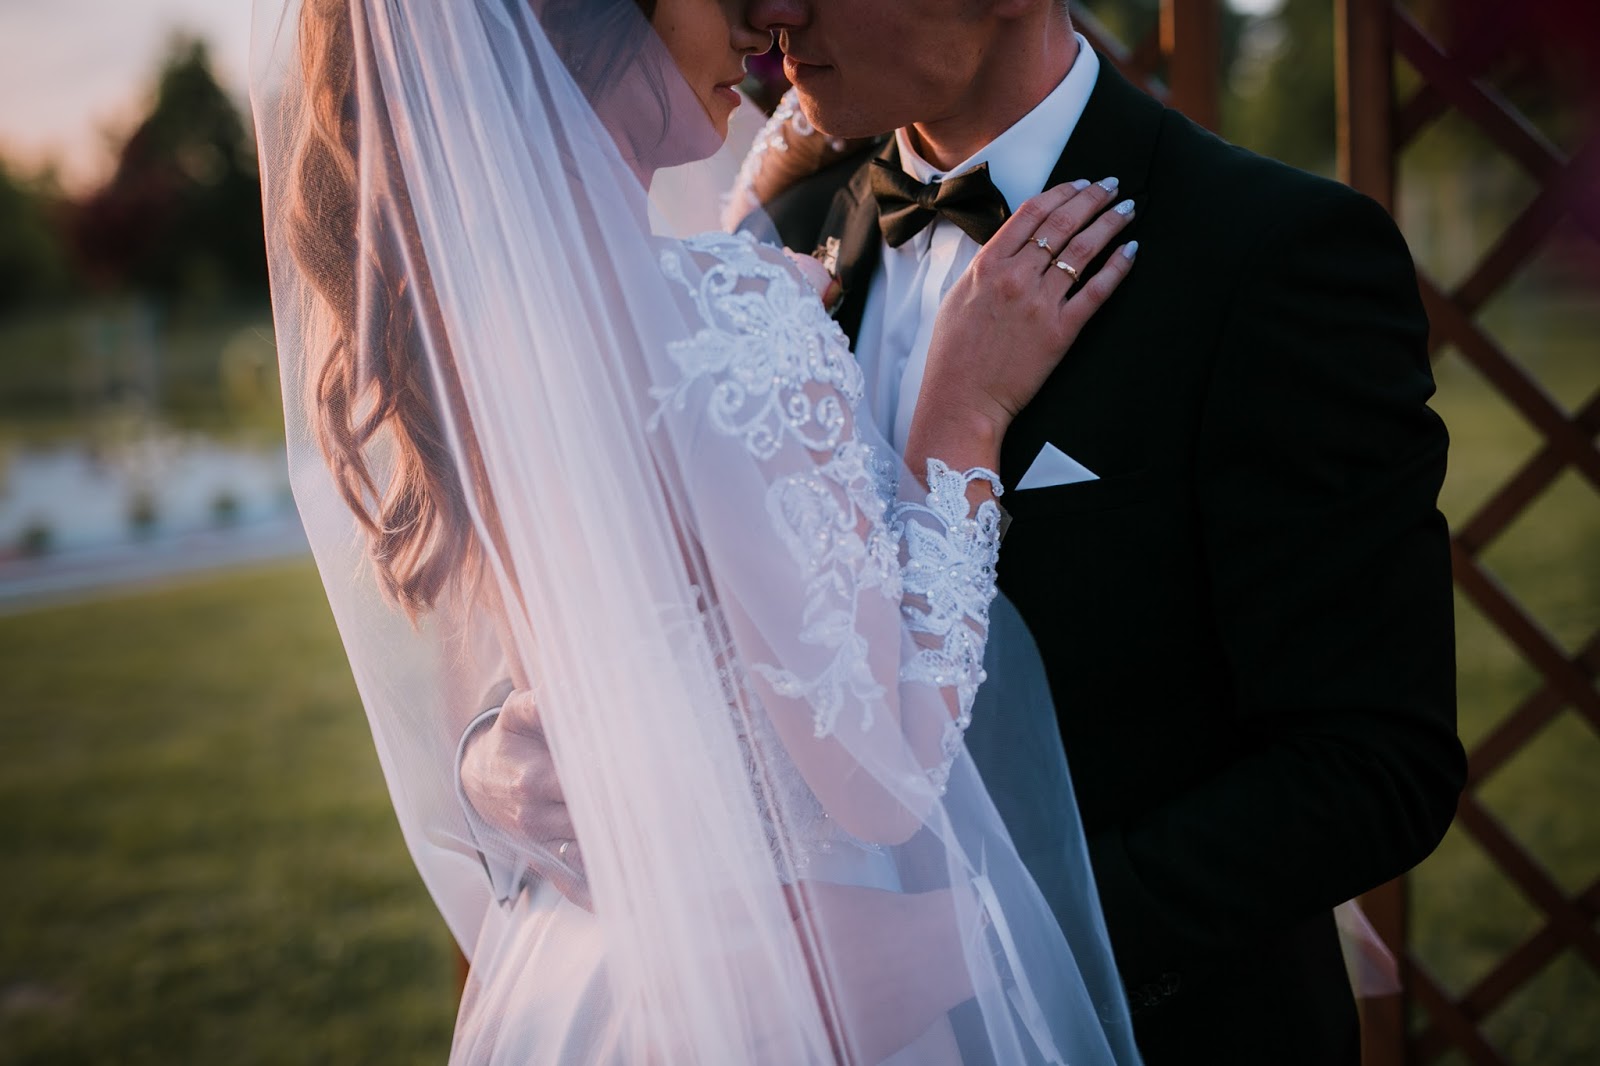 Nasz Teledysk Slubny I Dodatkowe Atrakcje Na Weselu Just Married Chelm Wedding Clip Save Motion Styloly Blog By Aleksandra Marzeda